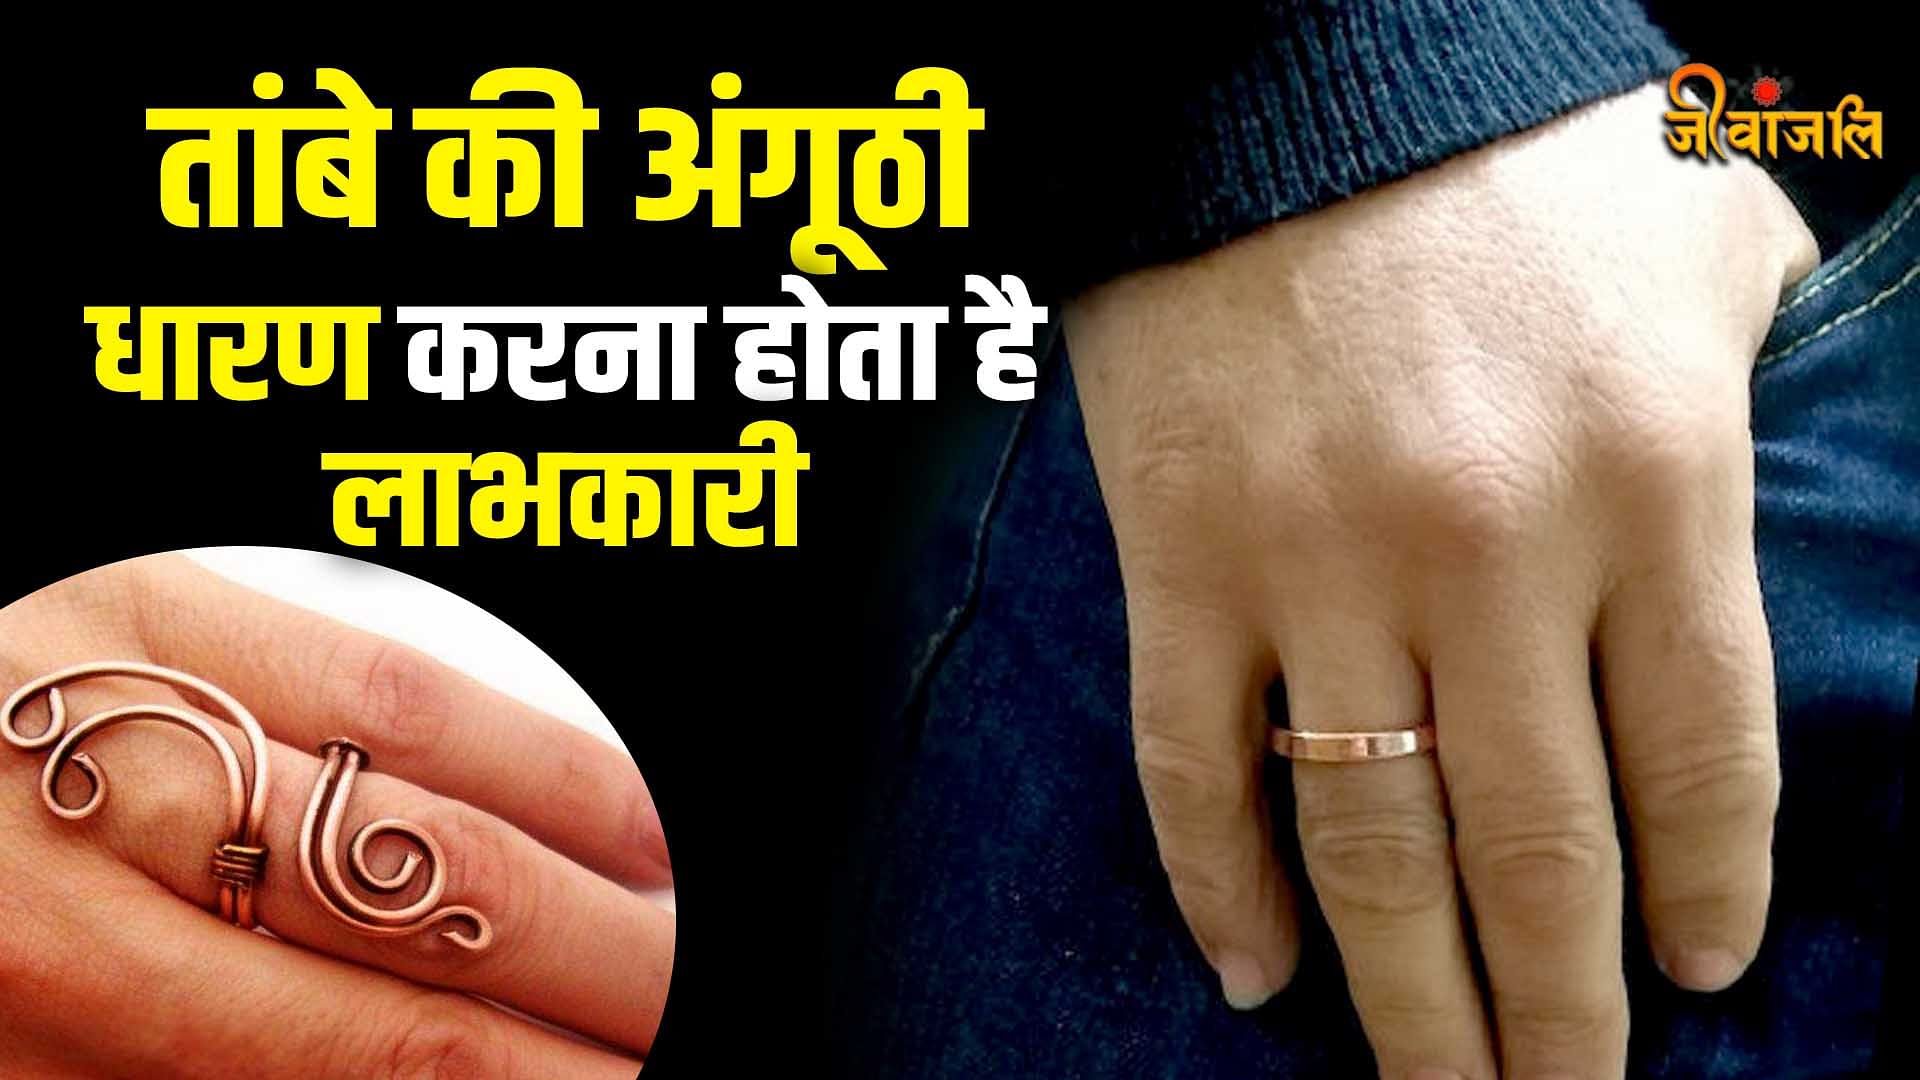 VINIROH Copper Snake Ring Adjustable Ring Jewellery Finger Ring for  Men/Women Copper Ring Price in India - Buy VINIROH Copper Snake Ring  Adjustable Ring Jewellery Finger Ring for Men/Women Copper Ring Online